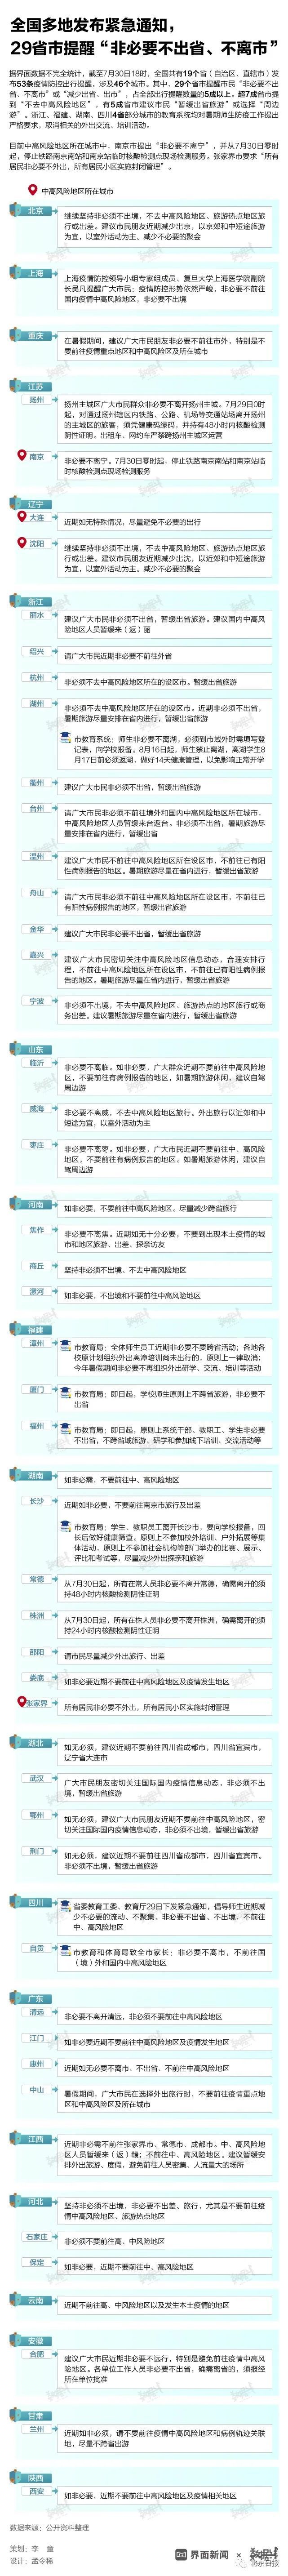 南京疫情传播链再延长，多地发紧急通知、景区关闭